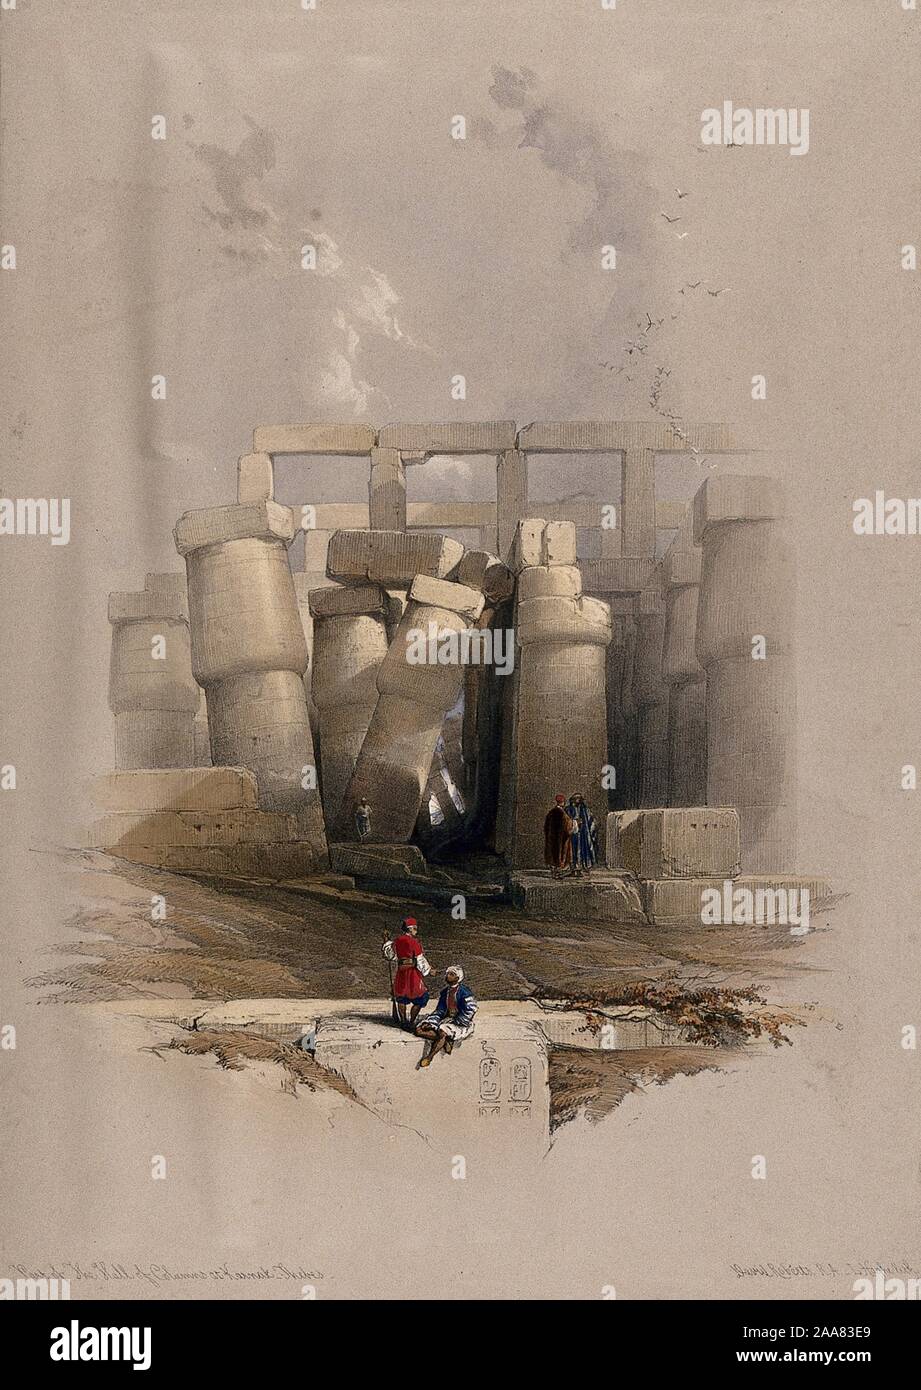 Columnas inclinadas, en el templo de Karnac, Tebas, Egipto. Litografía coloreada por Louis Haghe después de David Roberts, 1849.jpg - 2AA83E9 Foto de stock